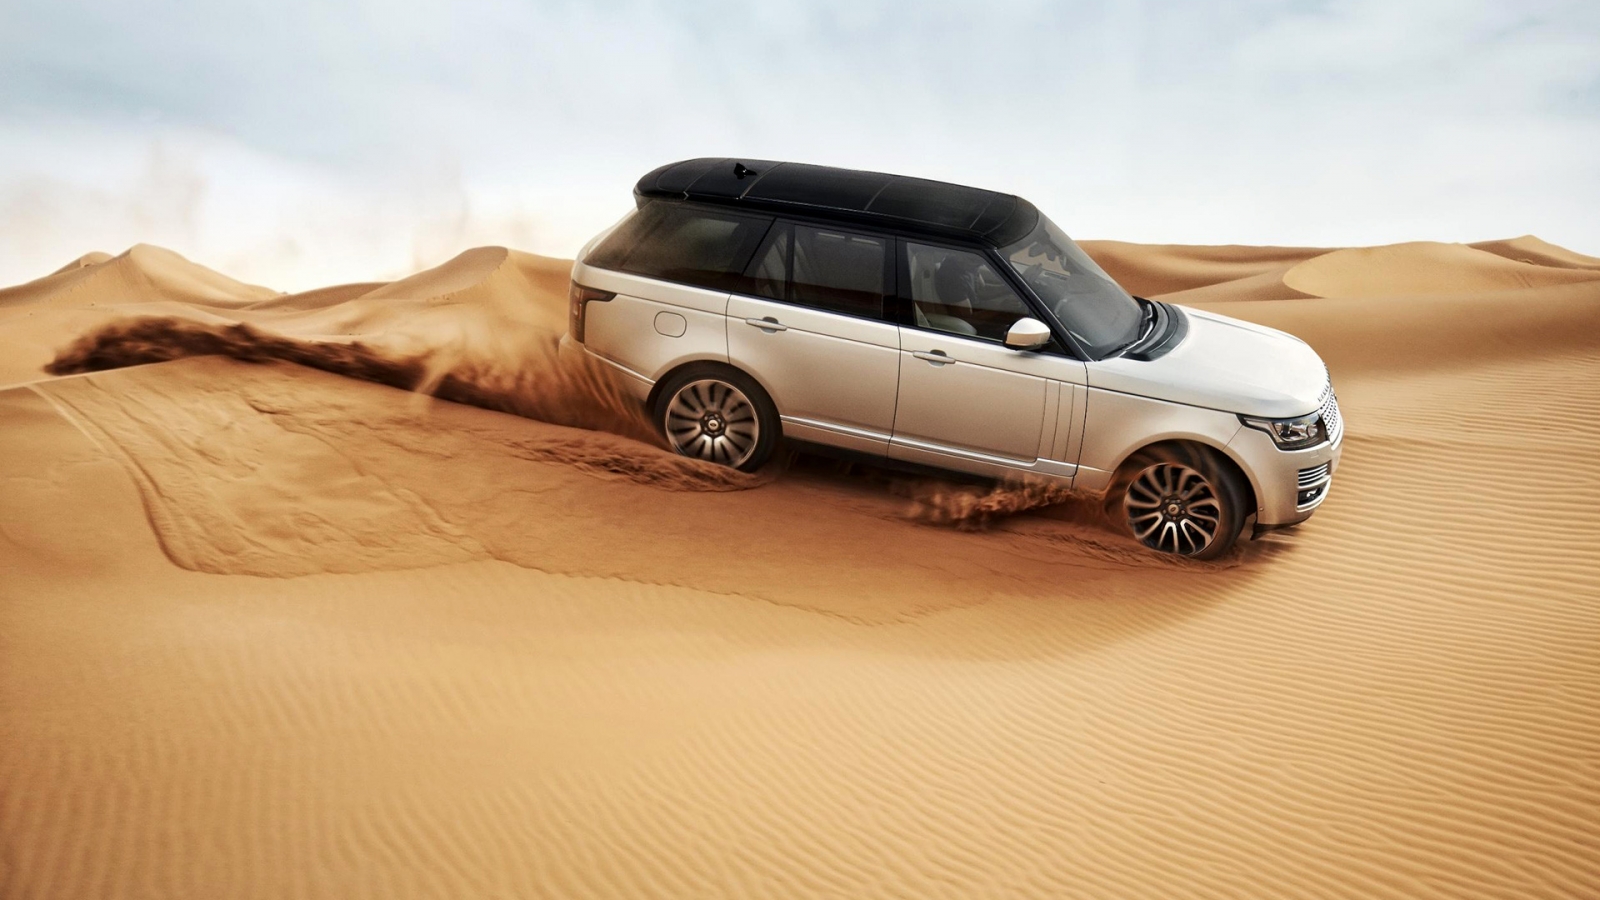 Range Rover in the Desert for 1600 x 900 HDTV resolution